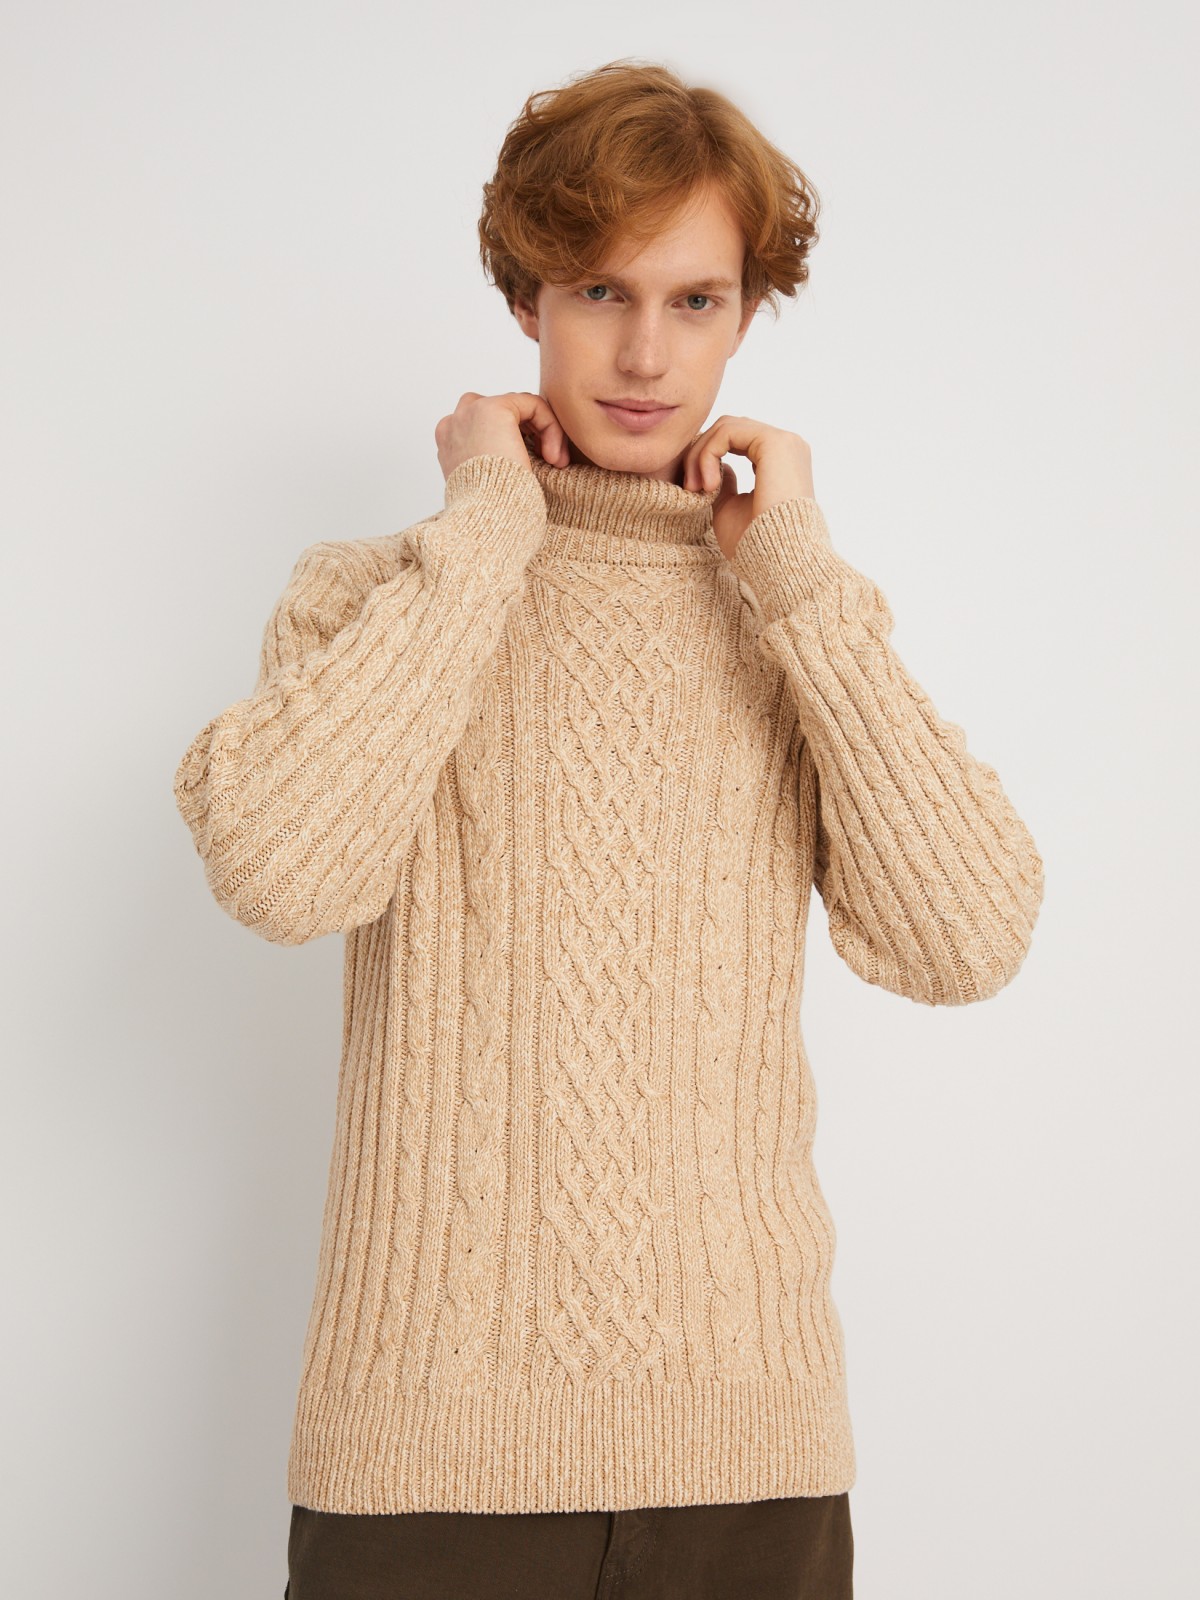 Вязаный свитер с фактурным узором косы zolla 013446165093, цвет коричневый, размер S - фото 1